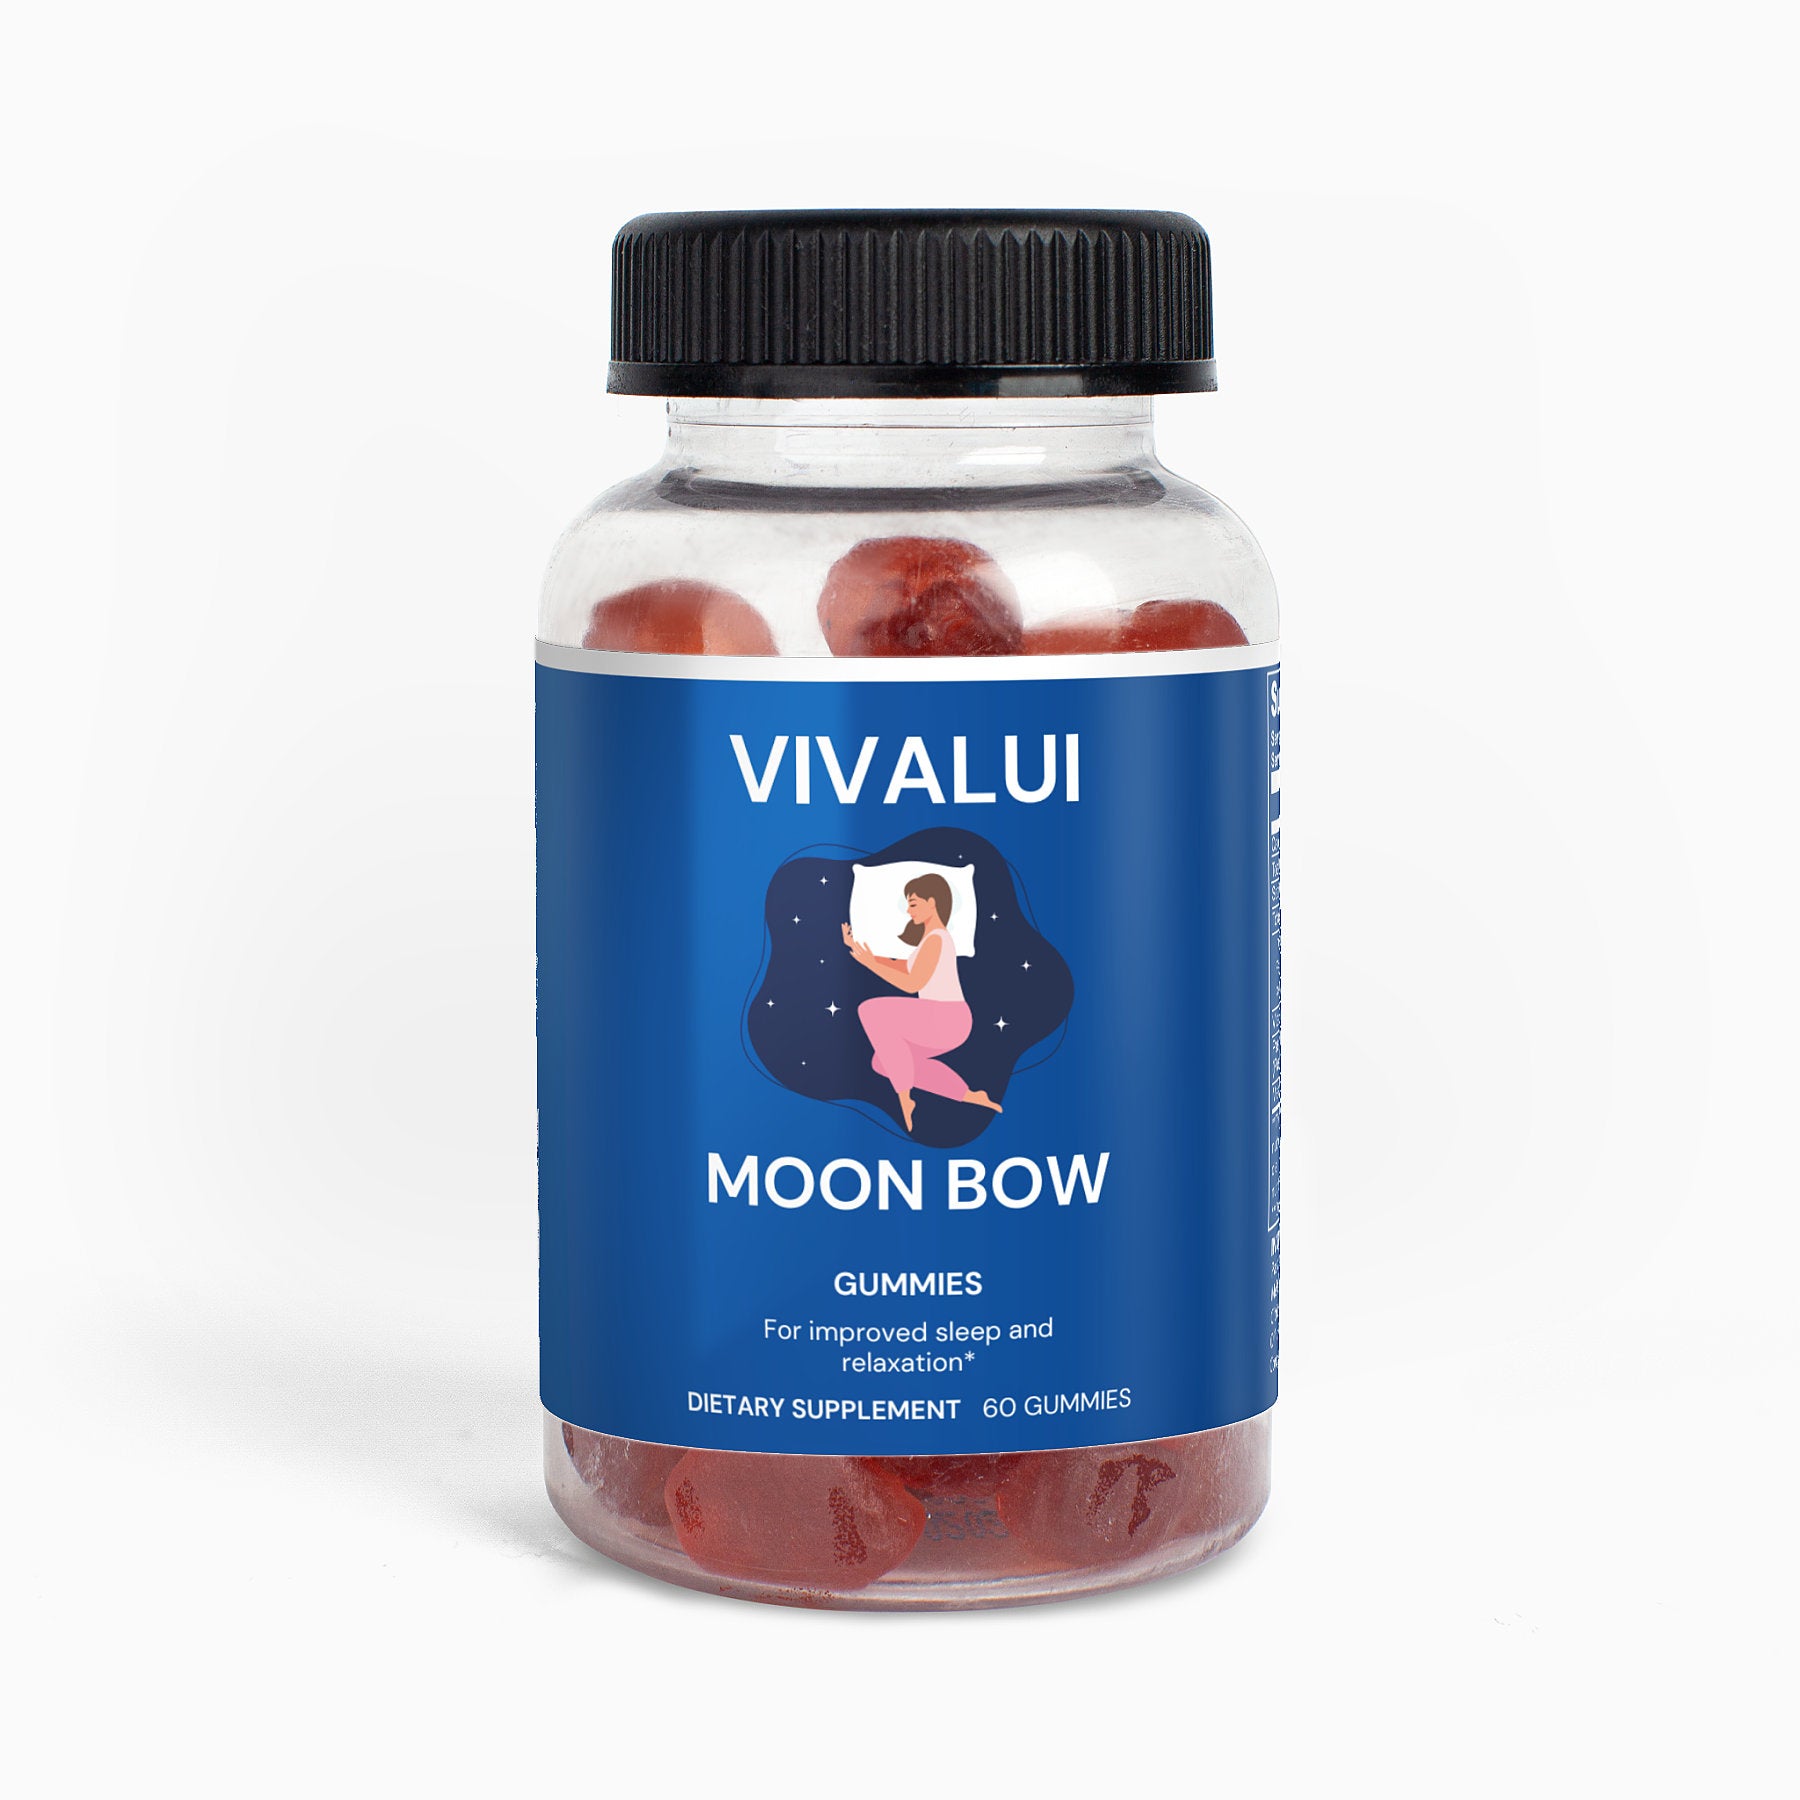 Vivalui Moon Bow Sweet Dreams Gummies Vegan 60 ct